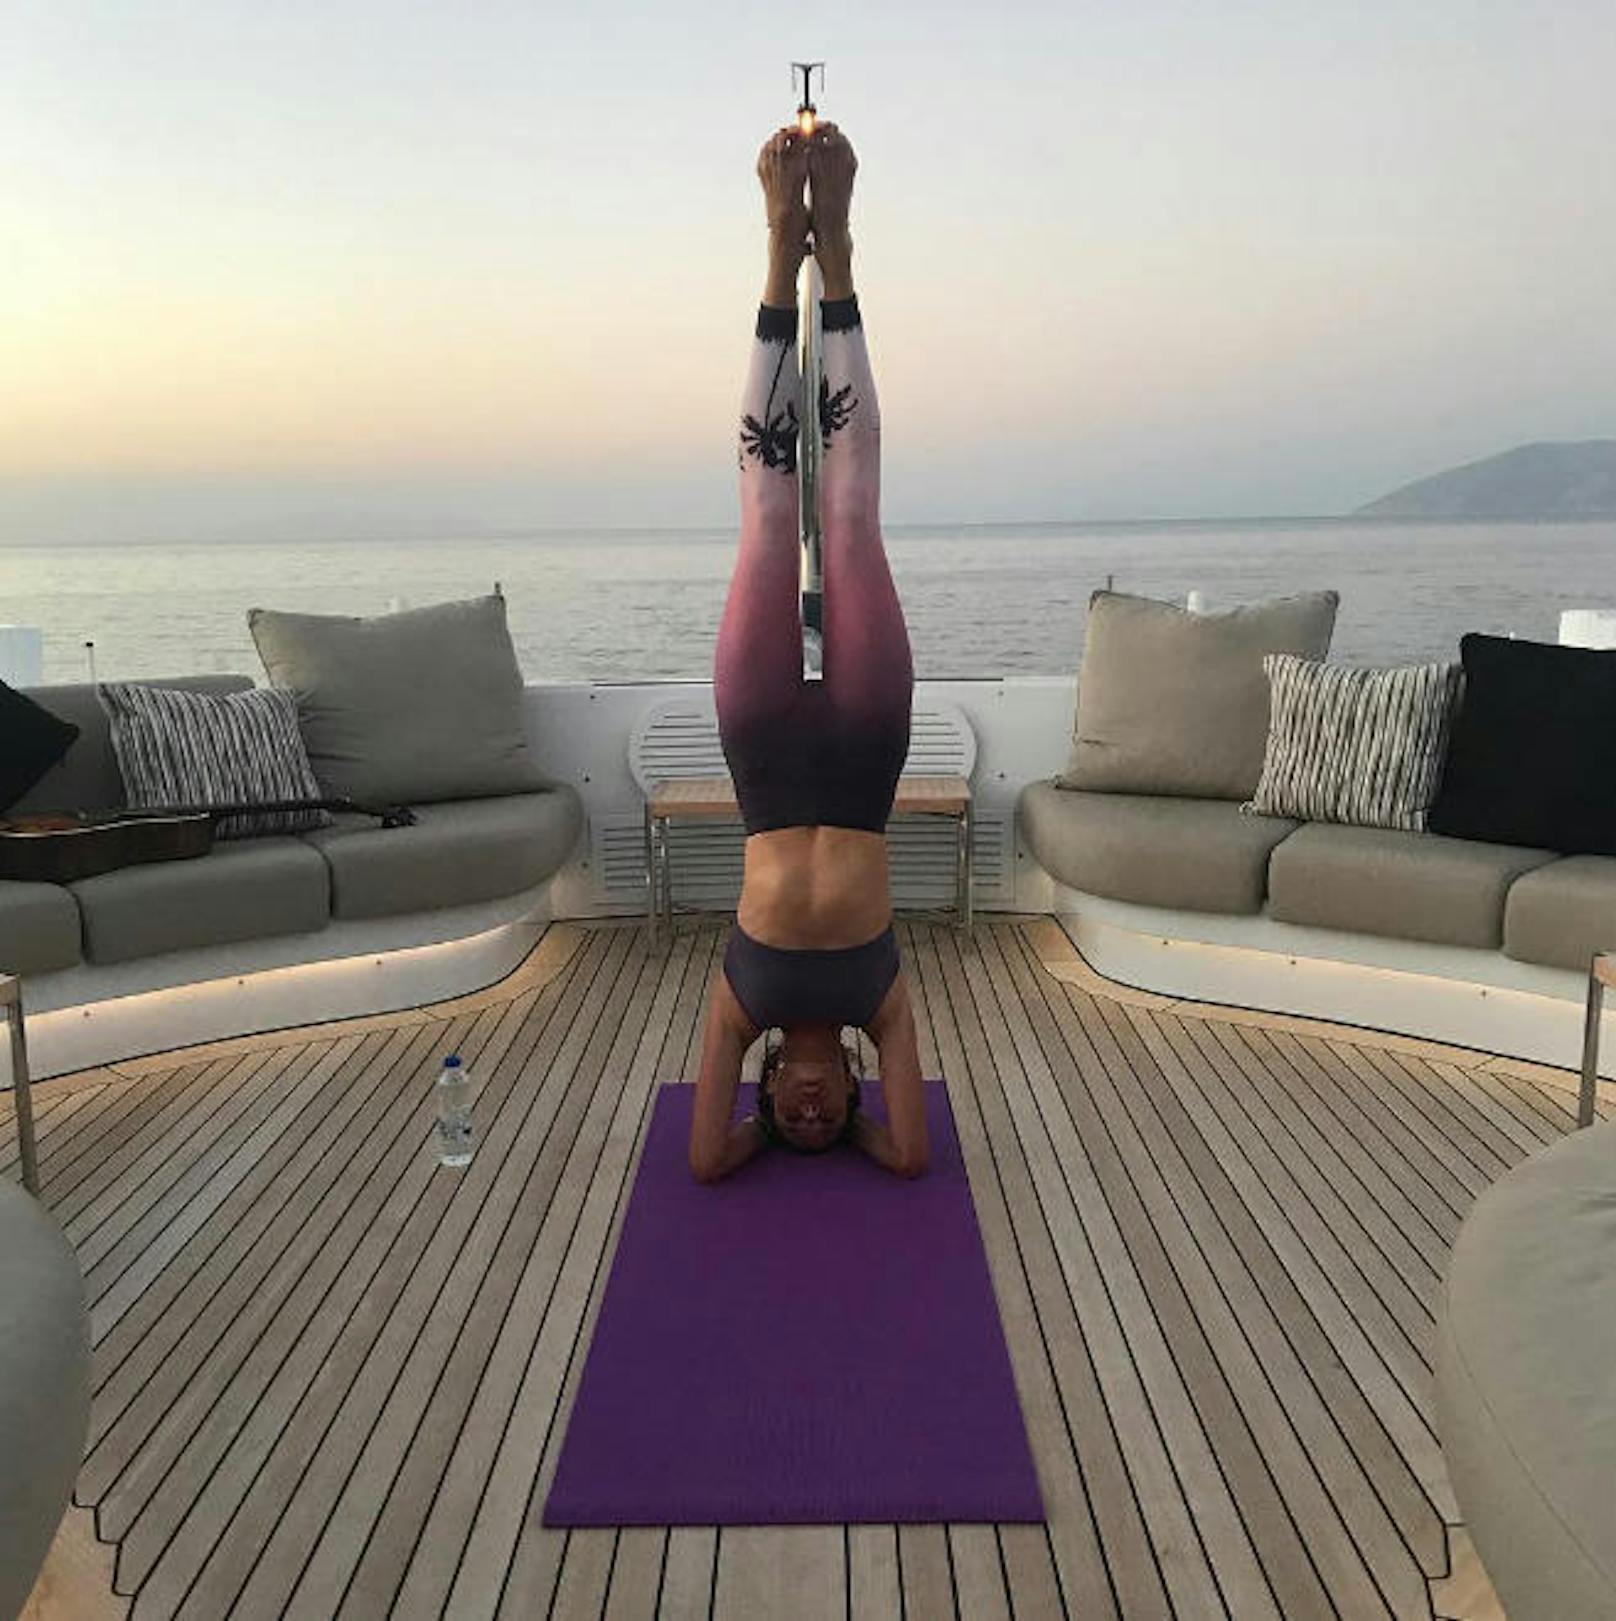 06.07.2017: So sieht es aus, wenn Model Alessandra Ambrosio Yoga macht! Auf einem Schiff in Griechenland...